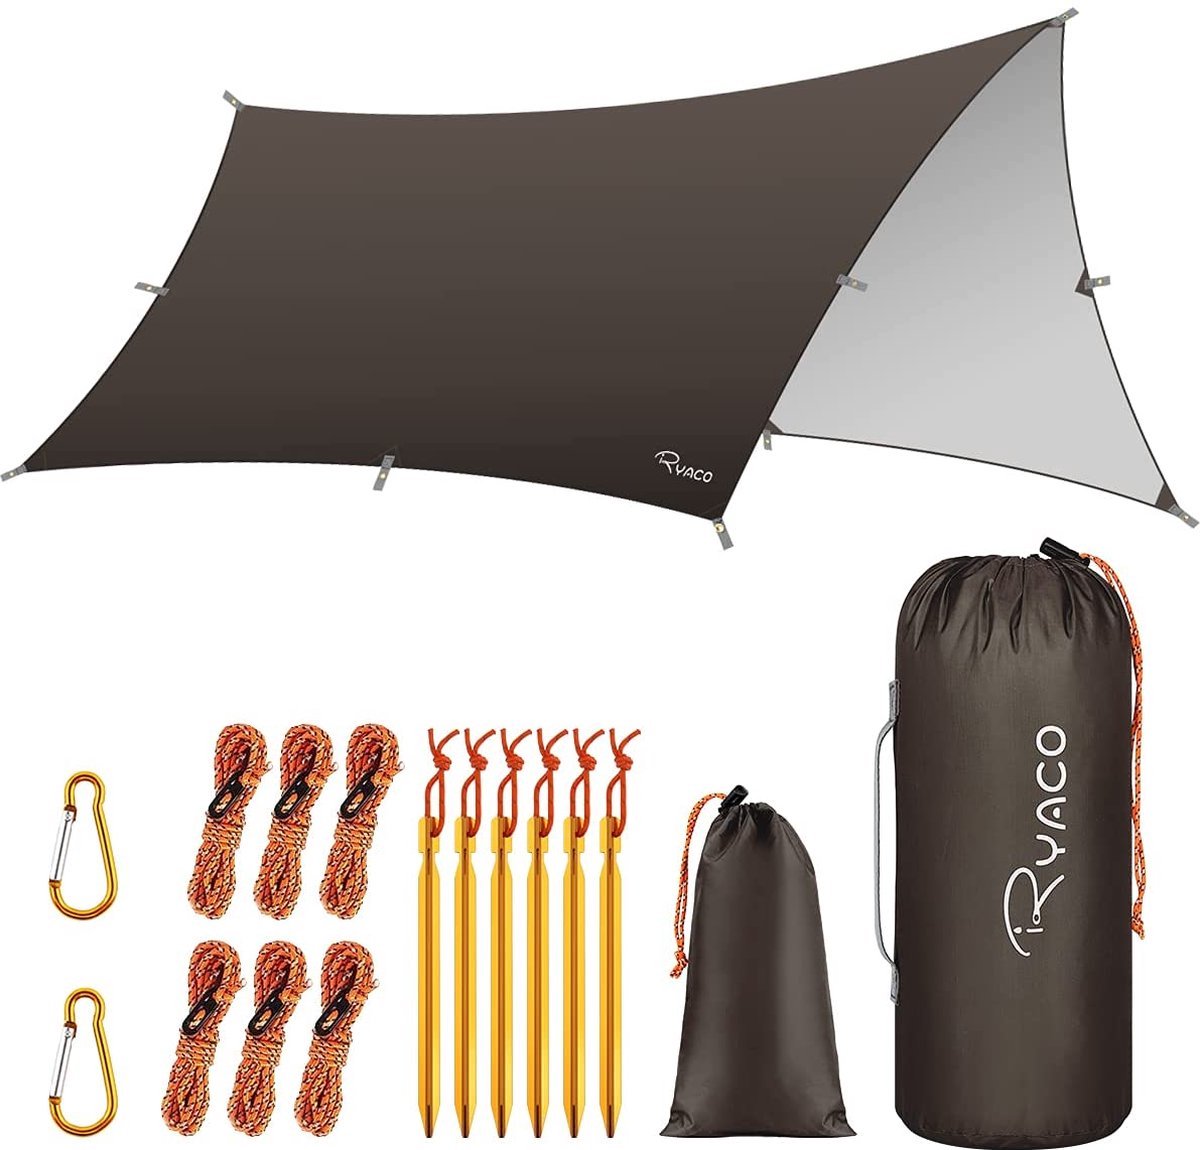 Ryaco Outdoor Tentzeil - Campingzeil - Zonnescherm met Opbergtas - Waterdicht - UV-Bestendig - Tarps voor kamperen - 3-4 Personen - 290 x 350 cm - Donker Bruin - Ryaco